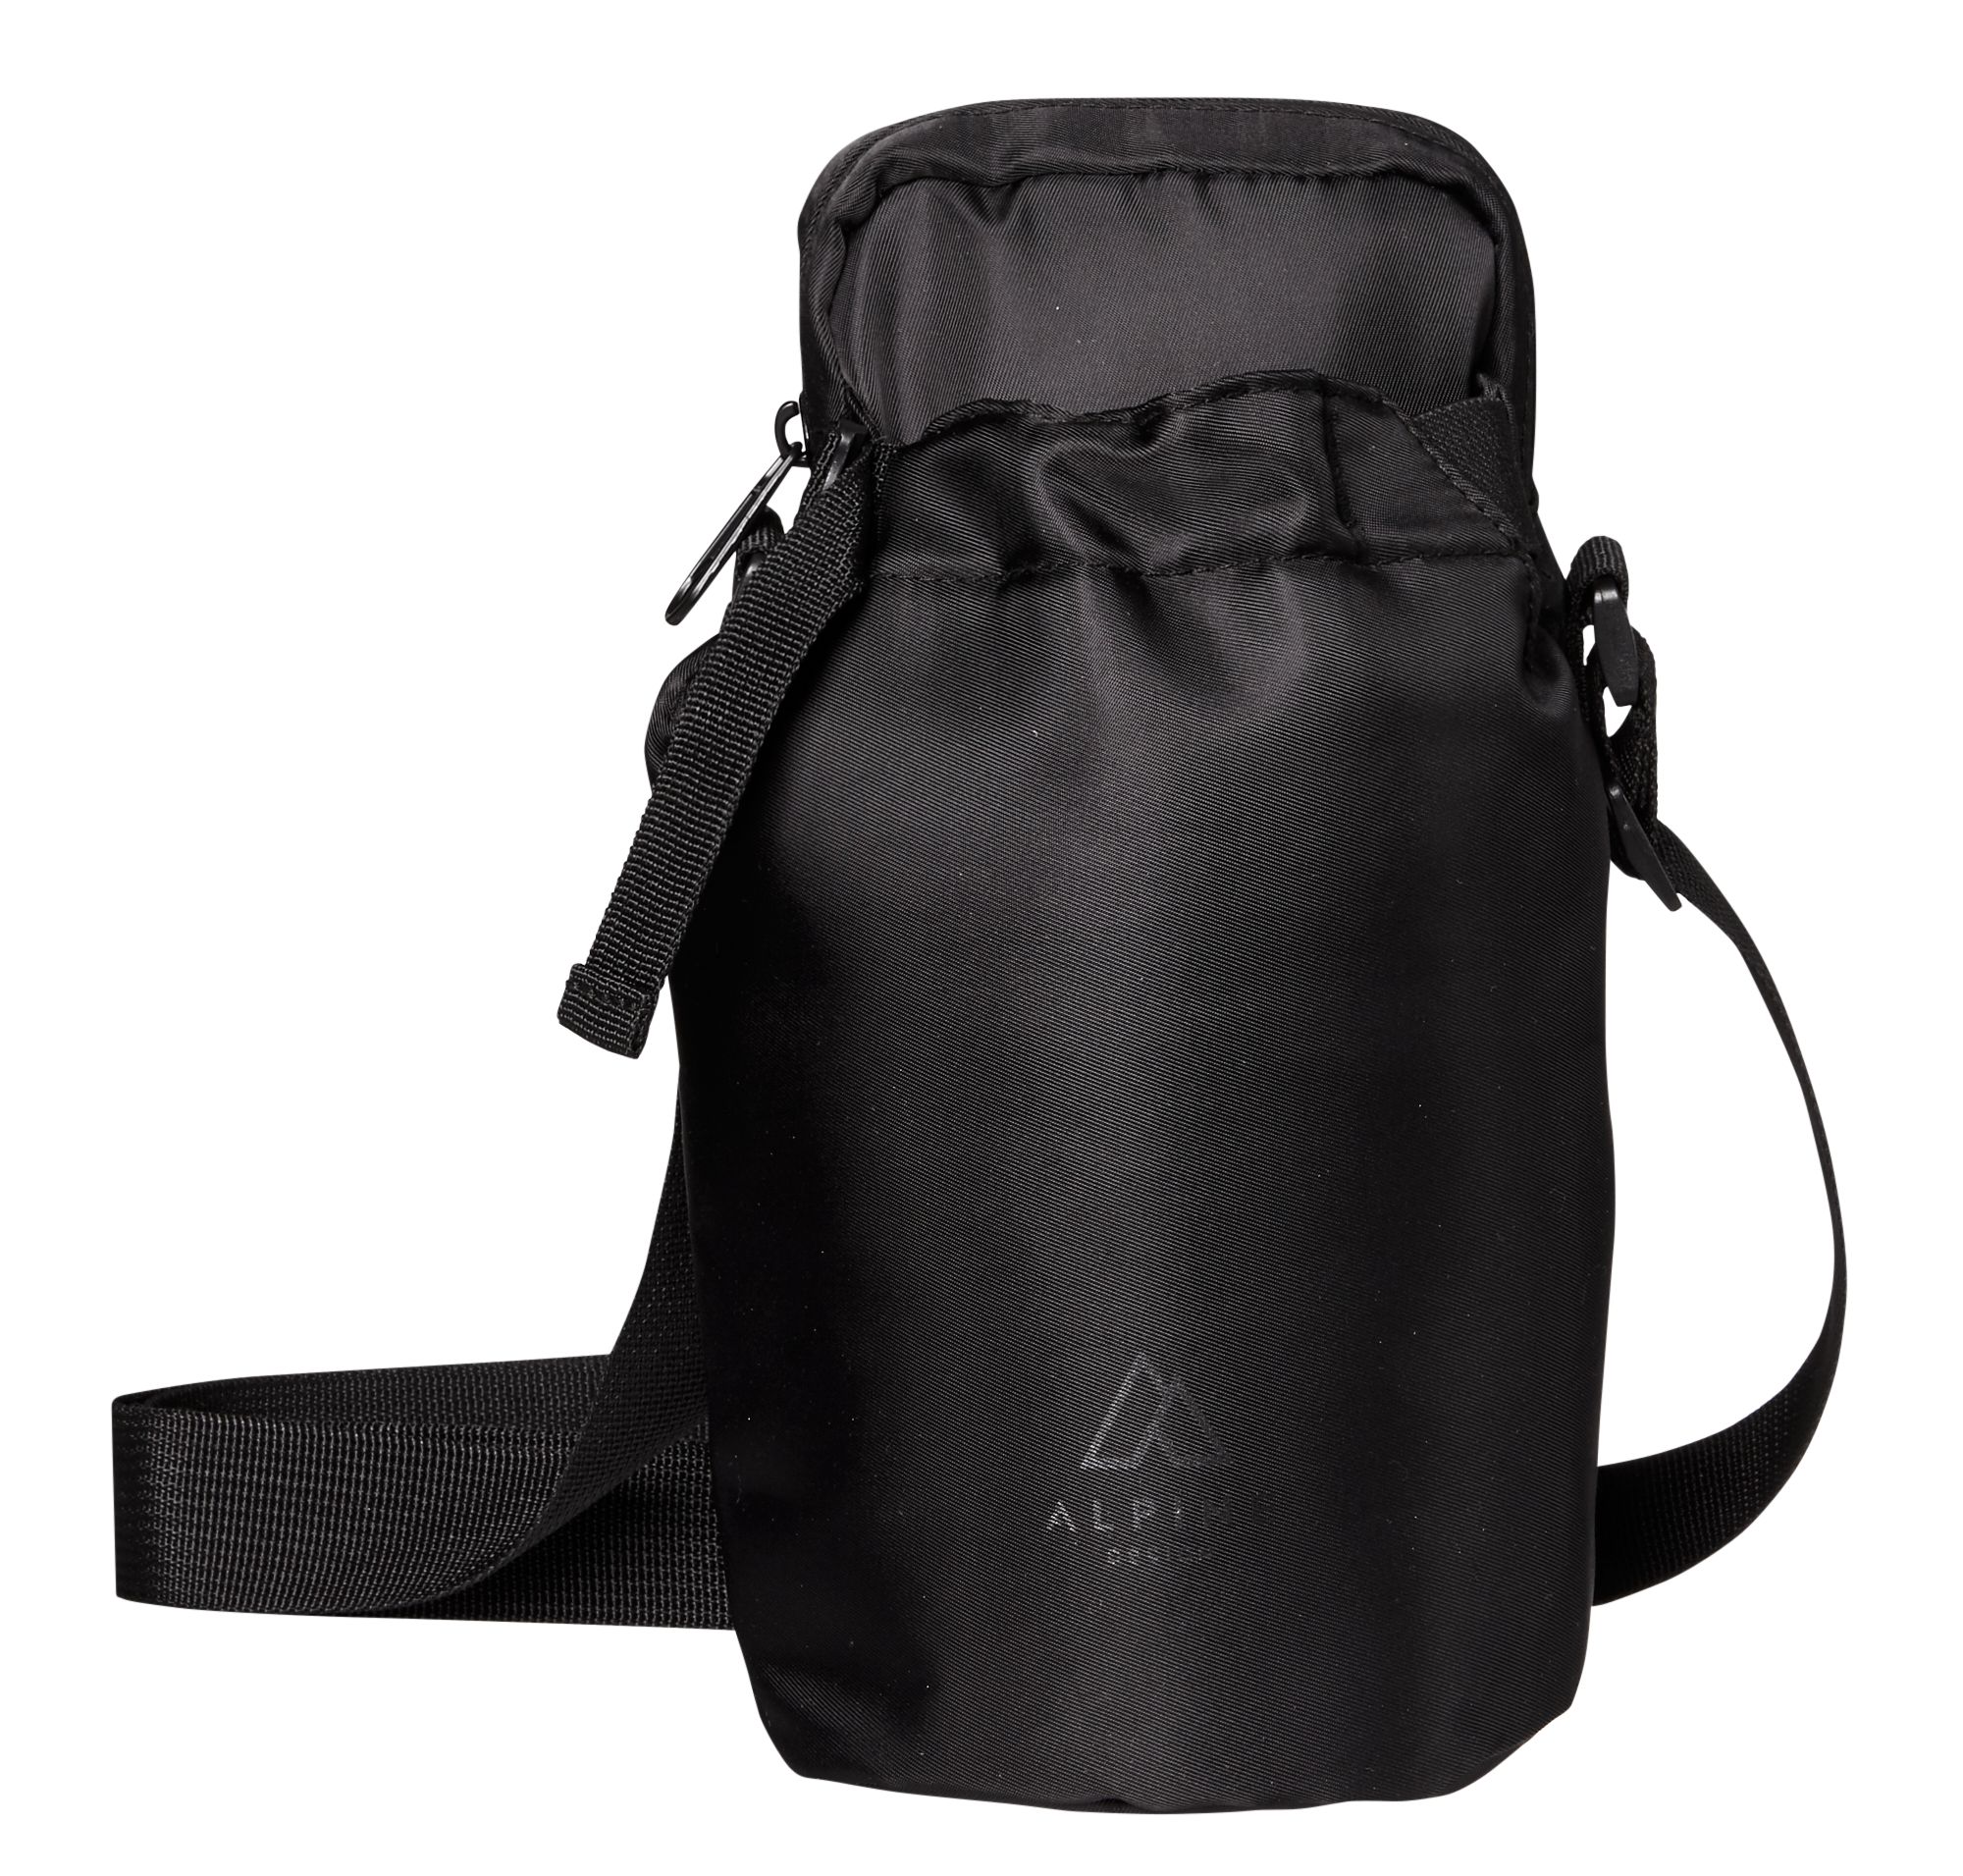 Alpine Design Water Bottle Carrier Bag